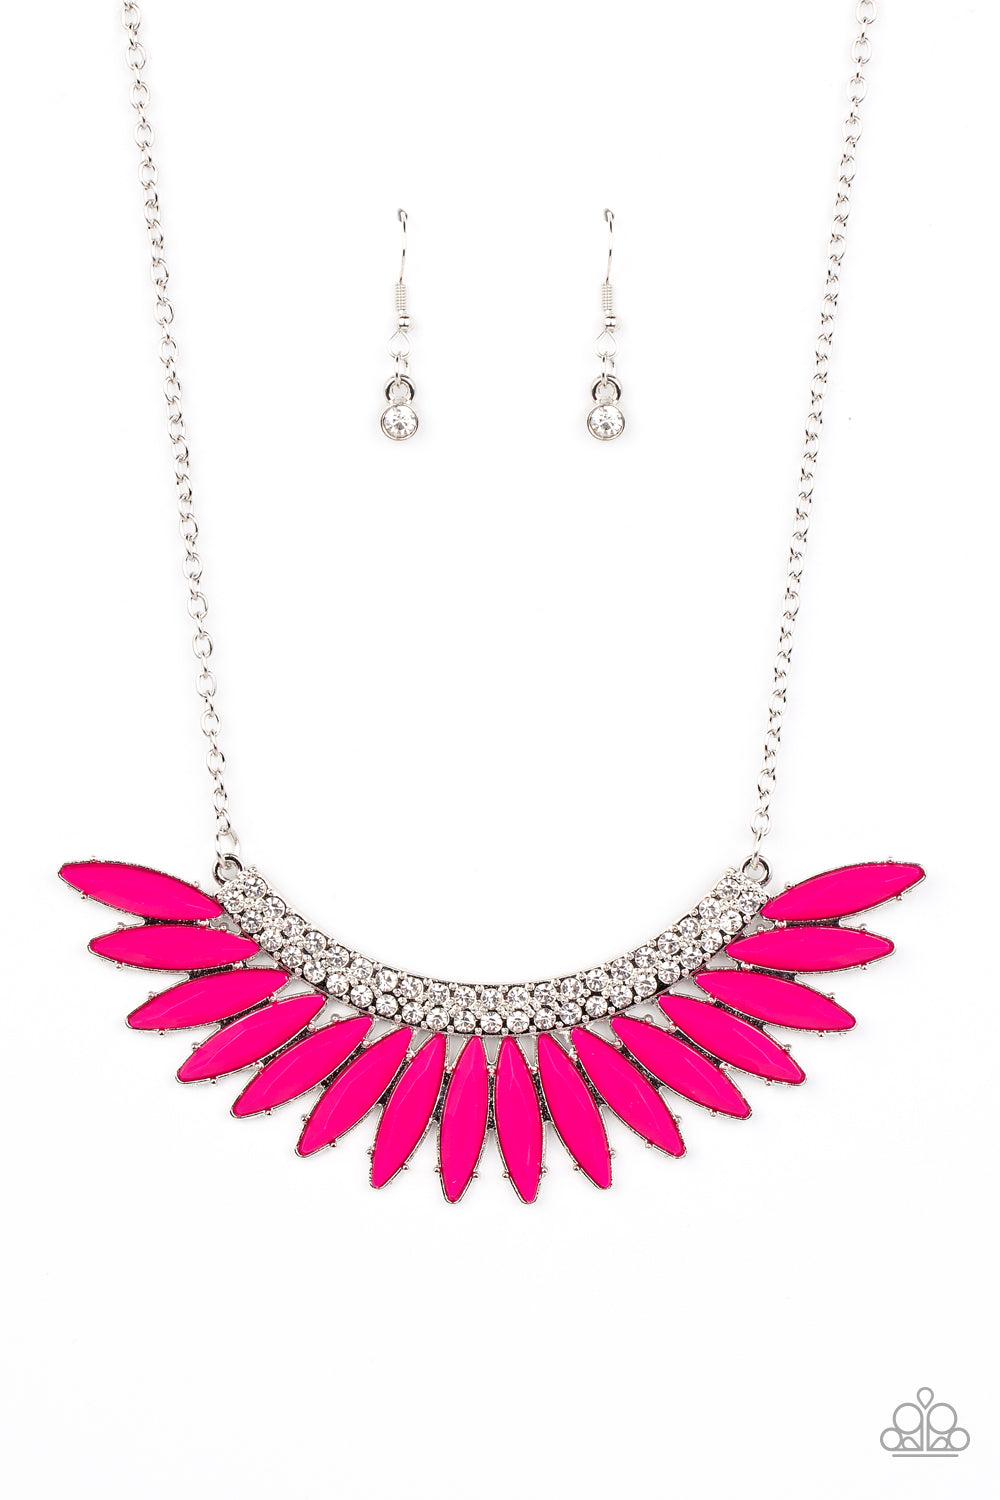 Paparazzi - Flauntable Flamboyance - Pink Necklace